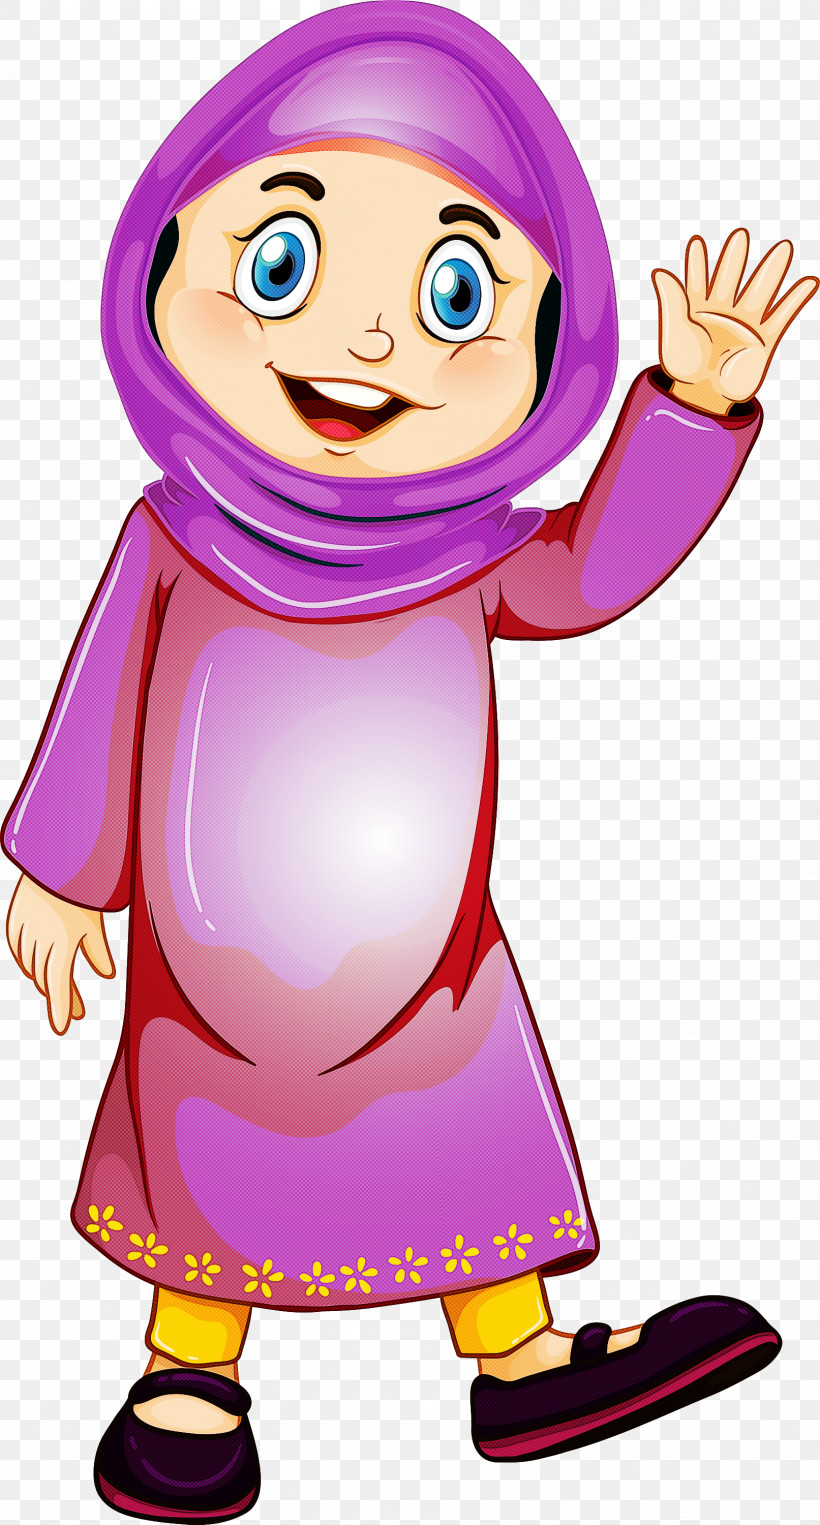 Muslim People, PNG, 1613x3000px, Muslim People, Cartoon, Gesture, Smile Download Free